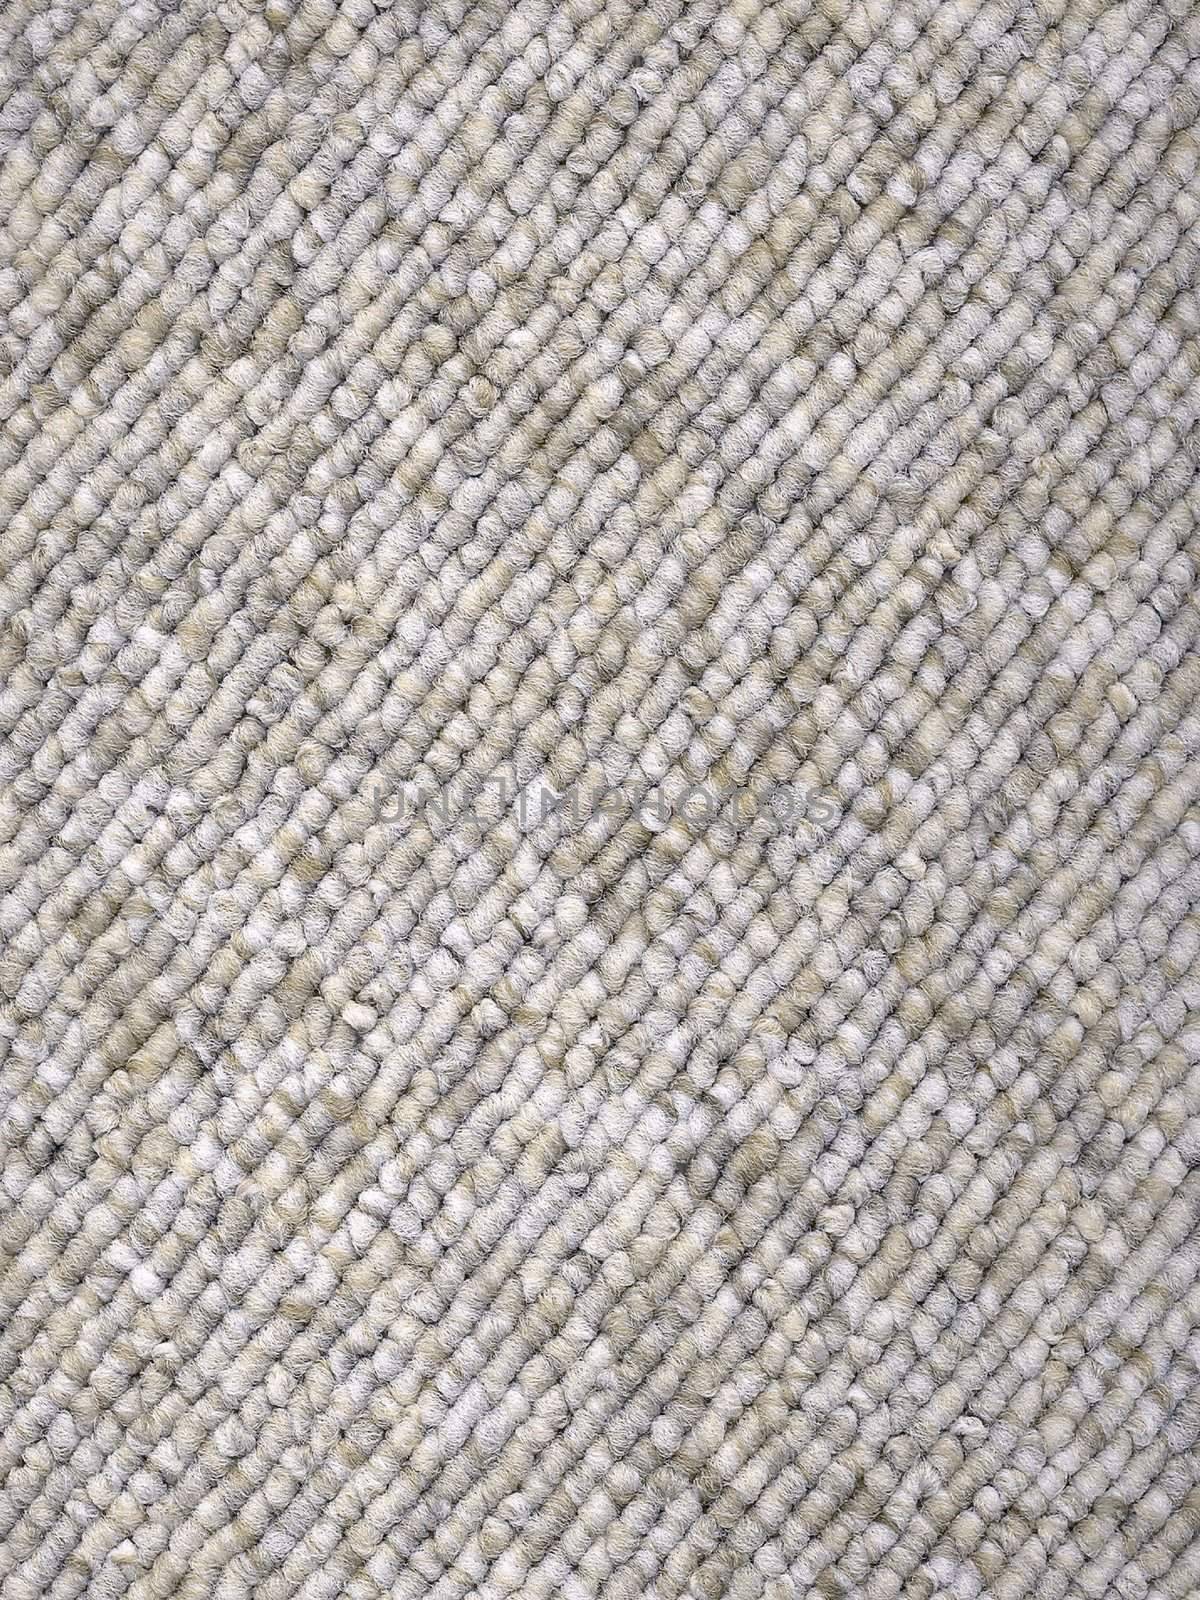 Sample of Grey Loop-woven Carpet/Rug by Nonboe